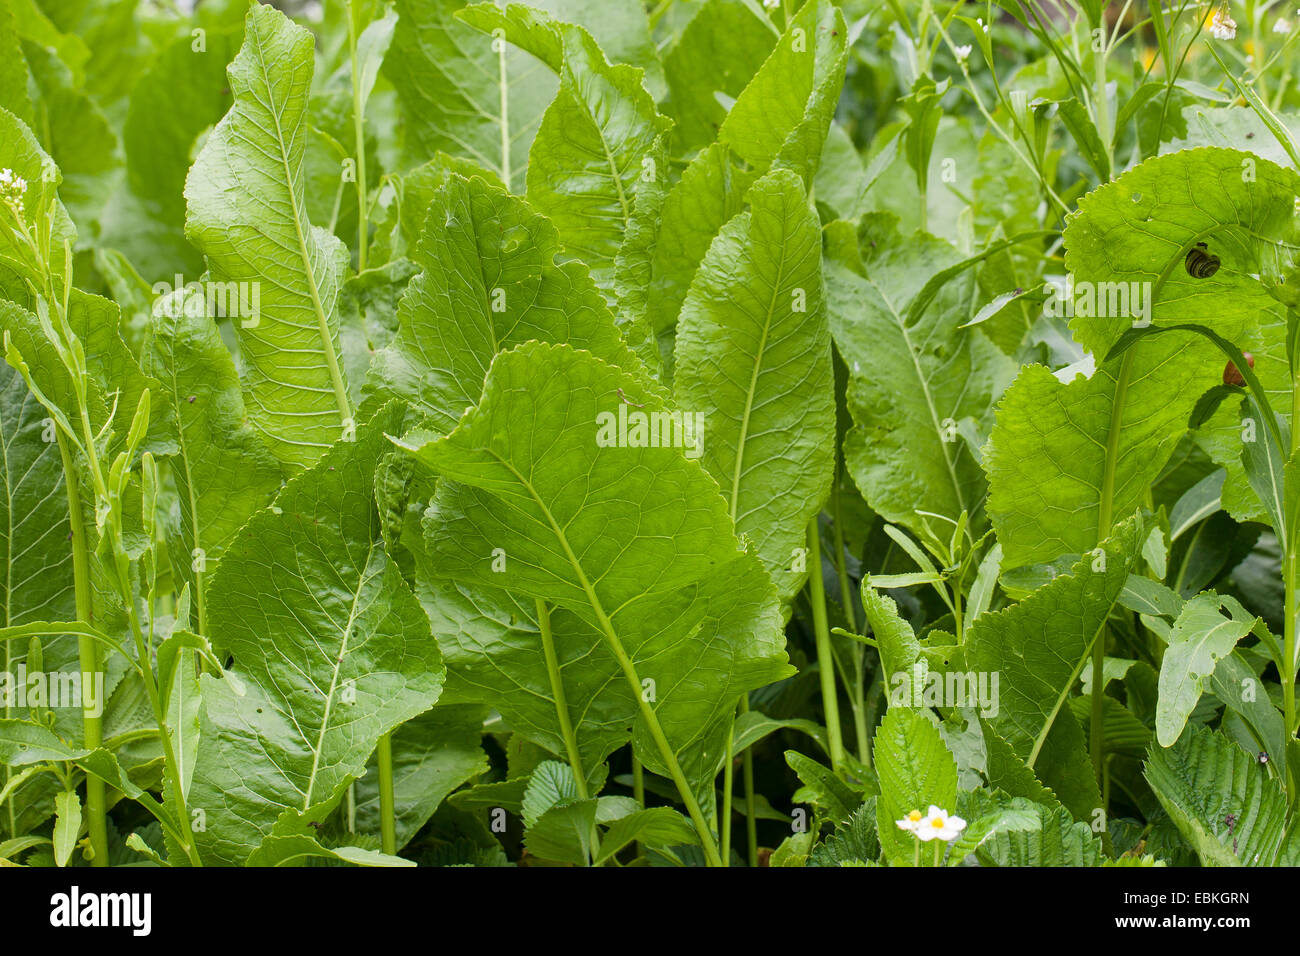 Horseradish, Horse-radish (Armoracia rusticana, Cochlearia armoracia), leaves, Germany Stock Photo